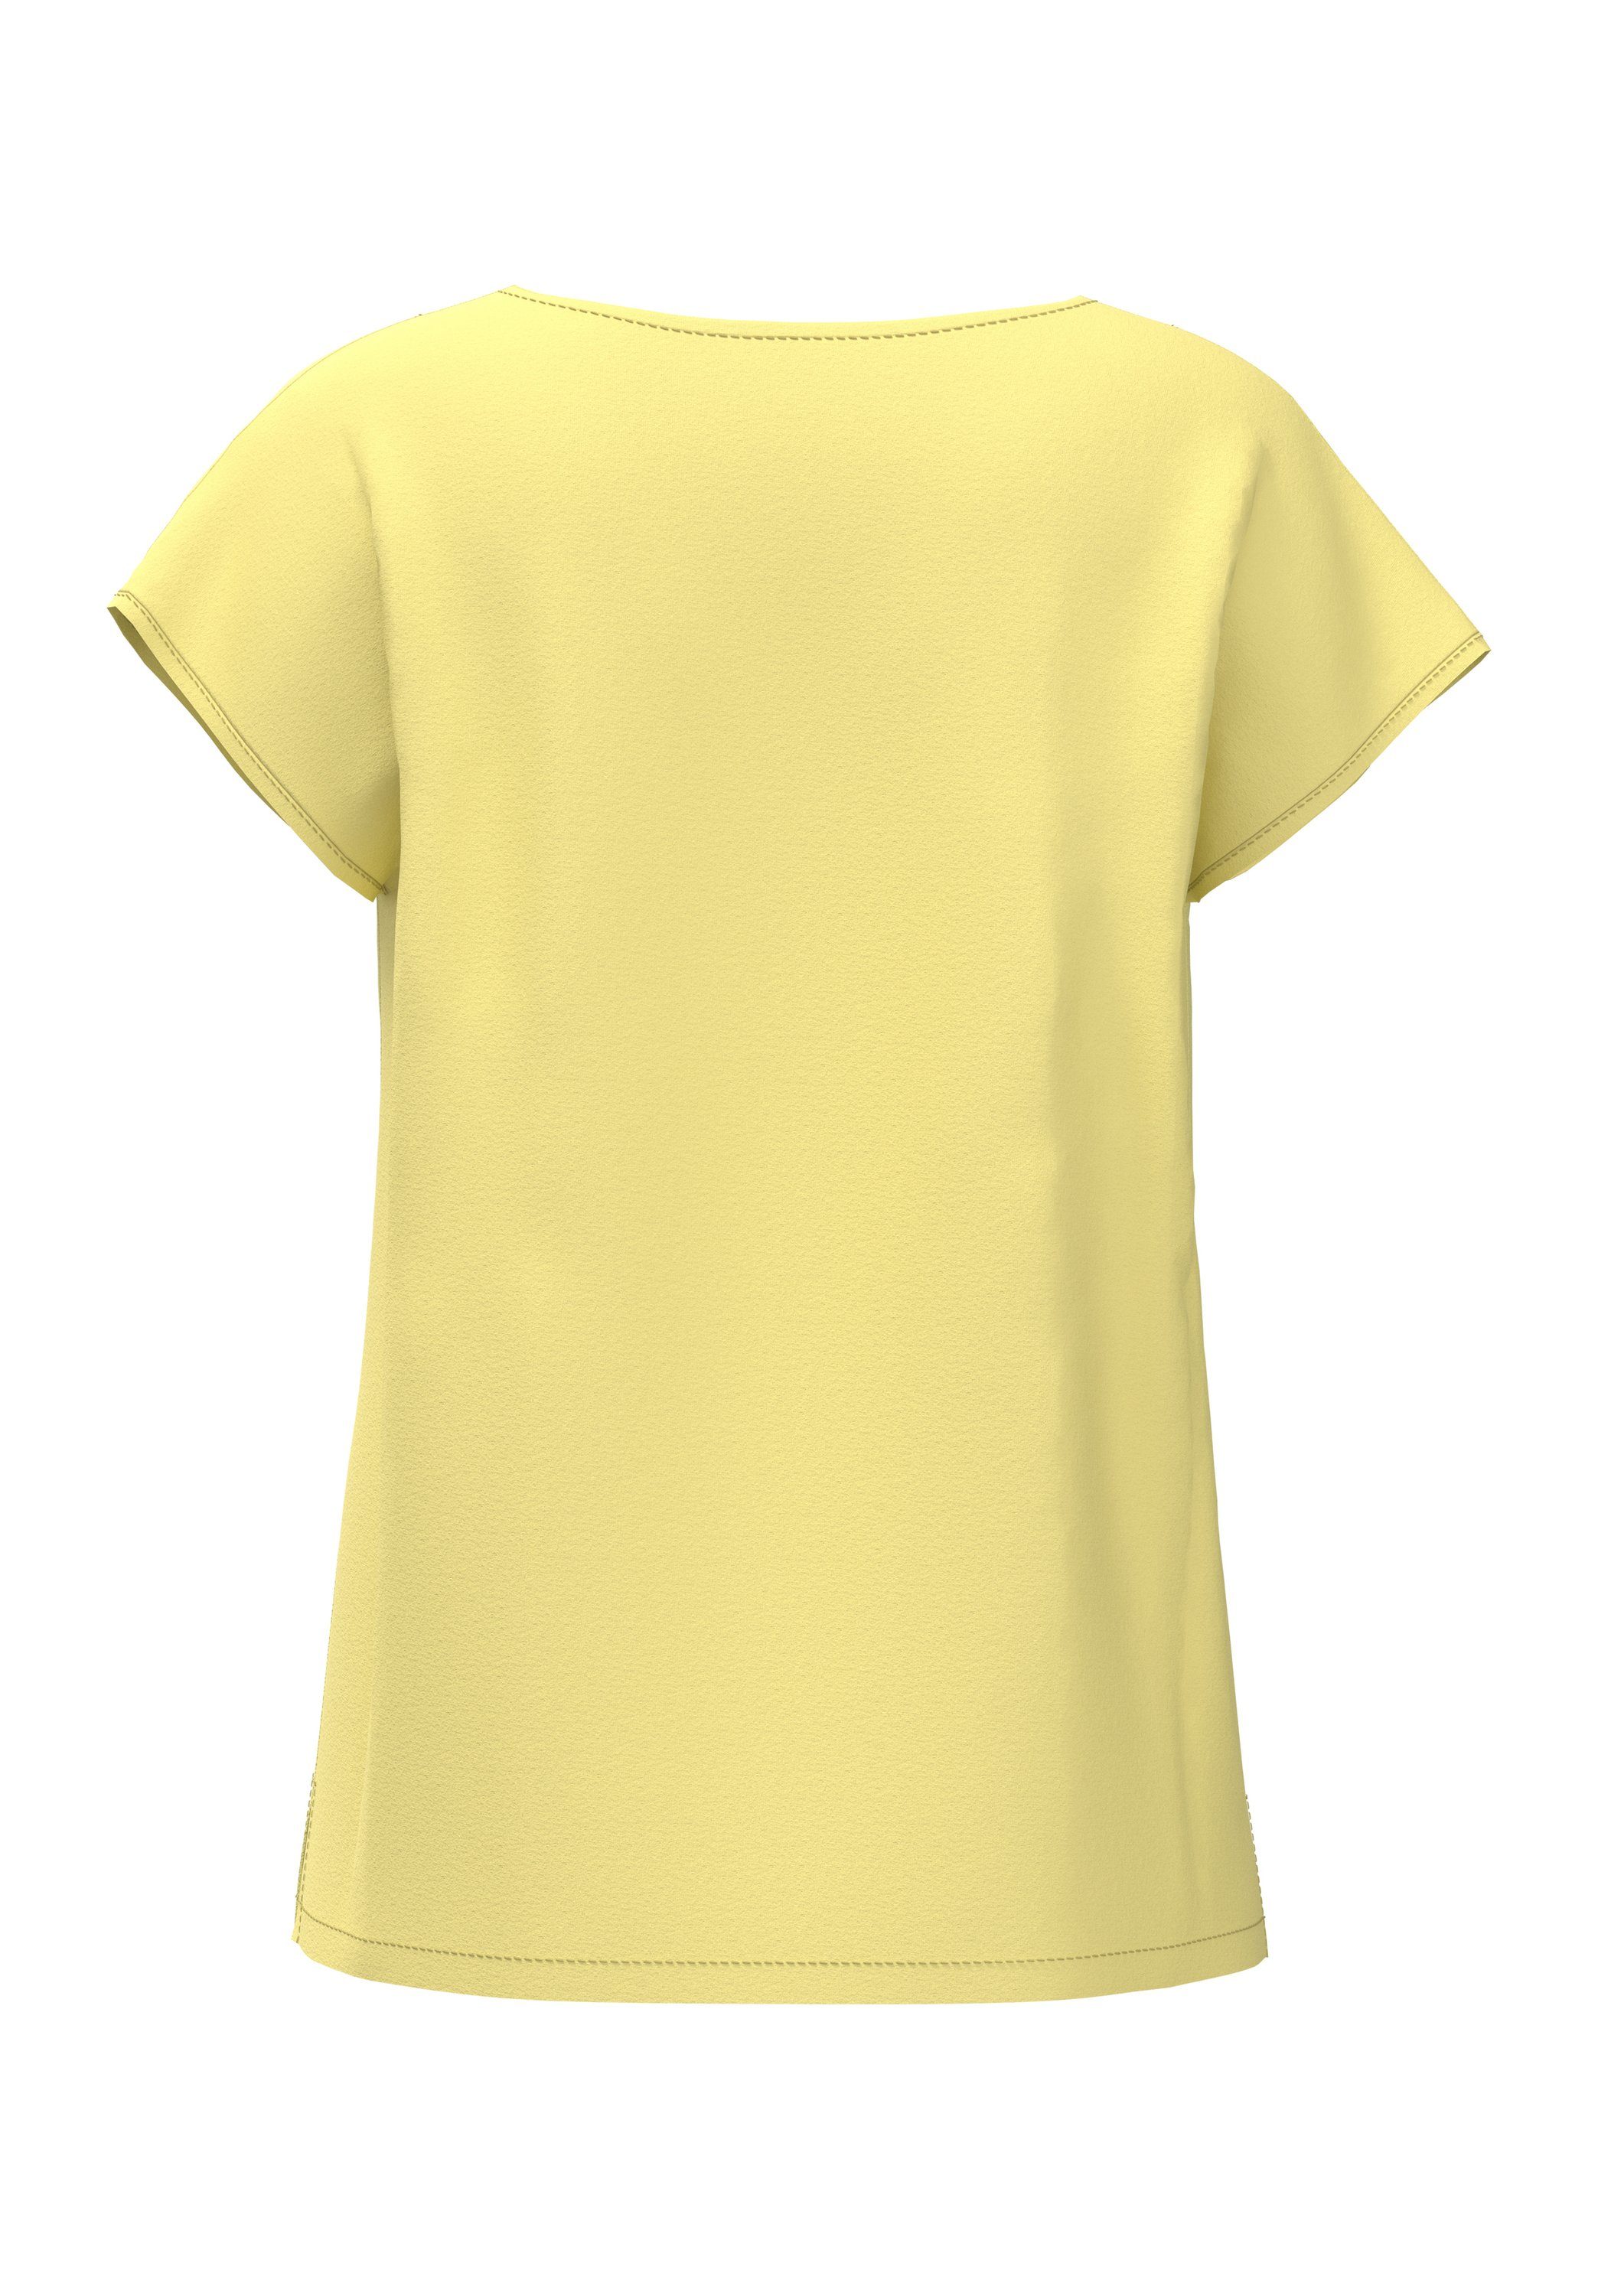 Damen Shirts bianca Blusenshirt LAILA modernes Basic Shirt mit femininen V-Ausschnitt